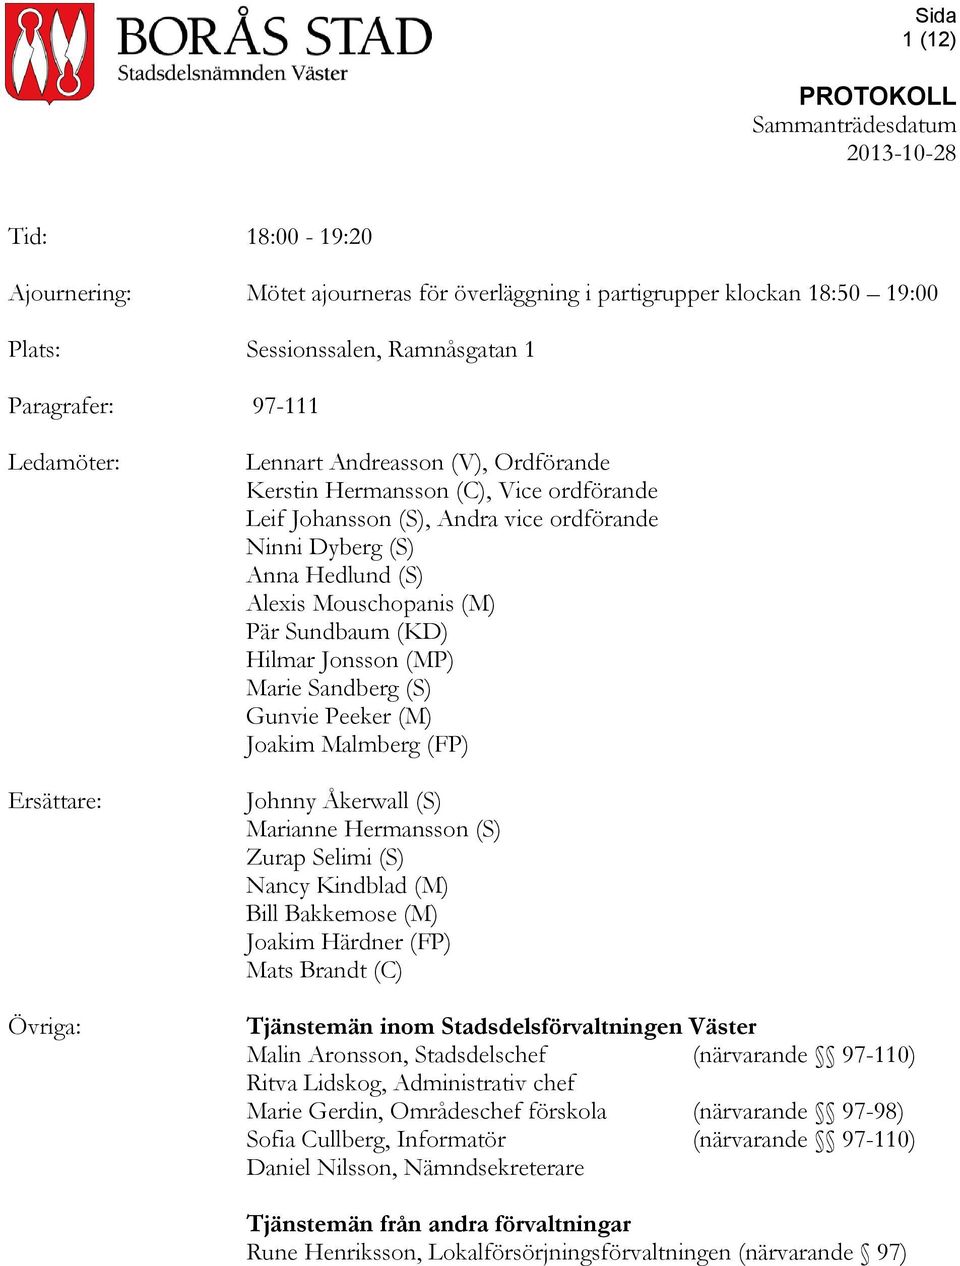 (MP) Marie Sandberg (S) Gunvie Peeker (M) Joakim Malmberg (FP) Johnny Åkerwall (S) Marianne Hermansson (S) Zurap Selimi (S) Nancy Kindblad (M) Bill Bakkemose (M) Joakim Härdner (FP) Mats Brandt (C)